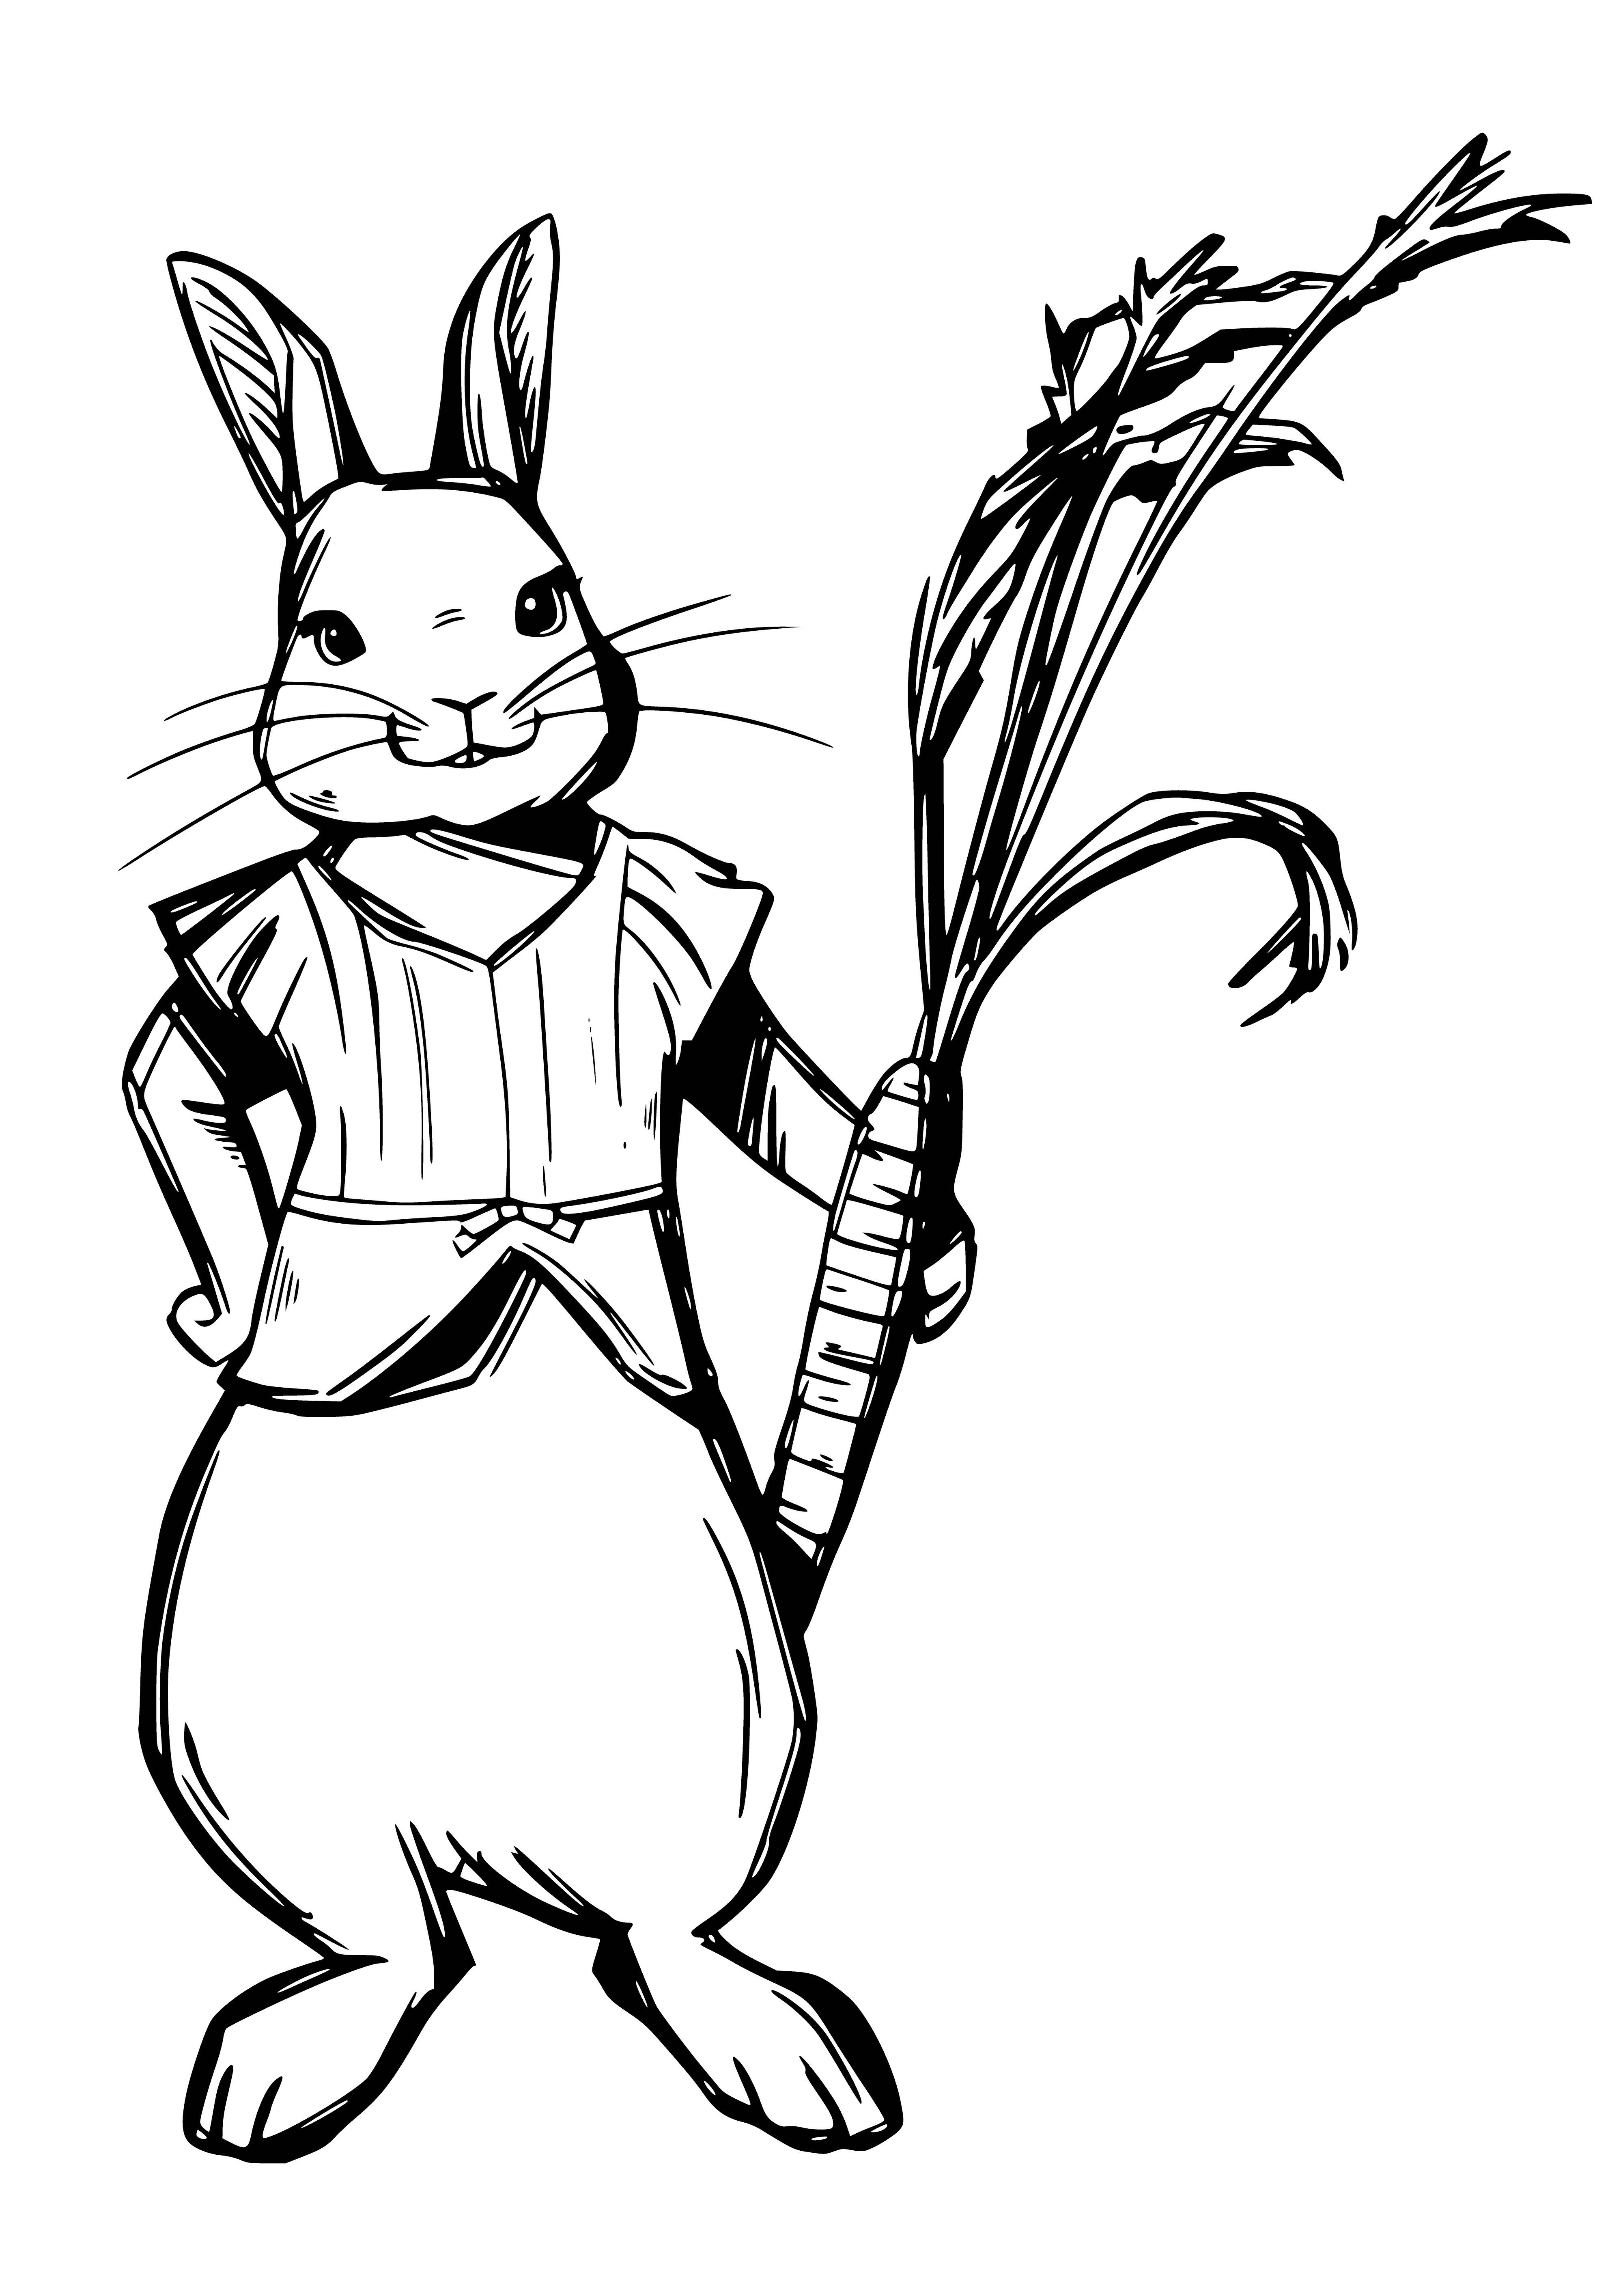 La grande soeur de Peter Rabbit - Mopsy coloriage